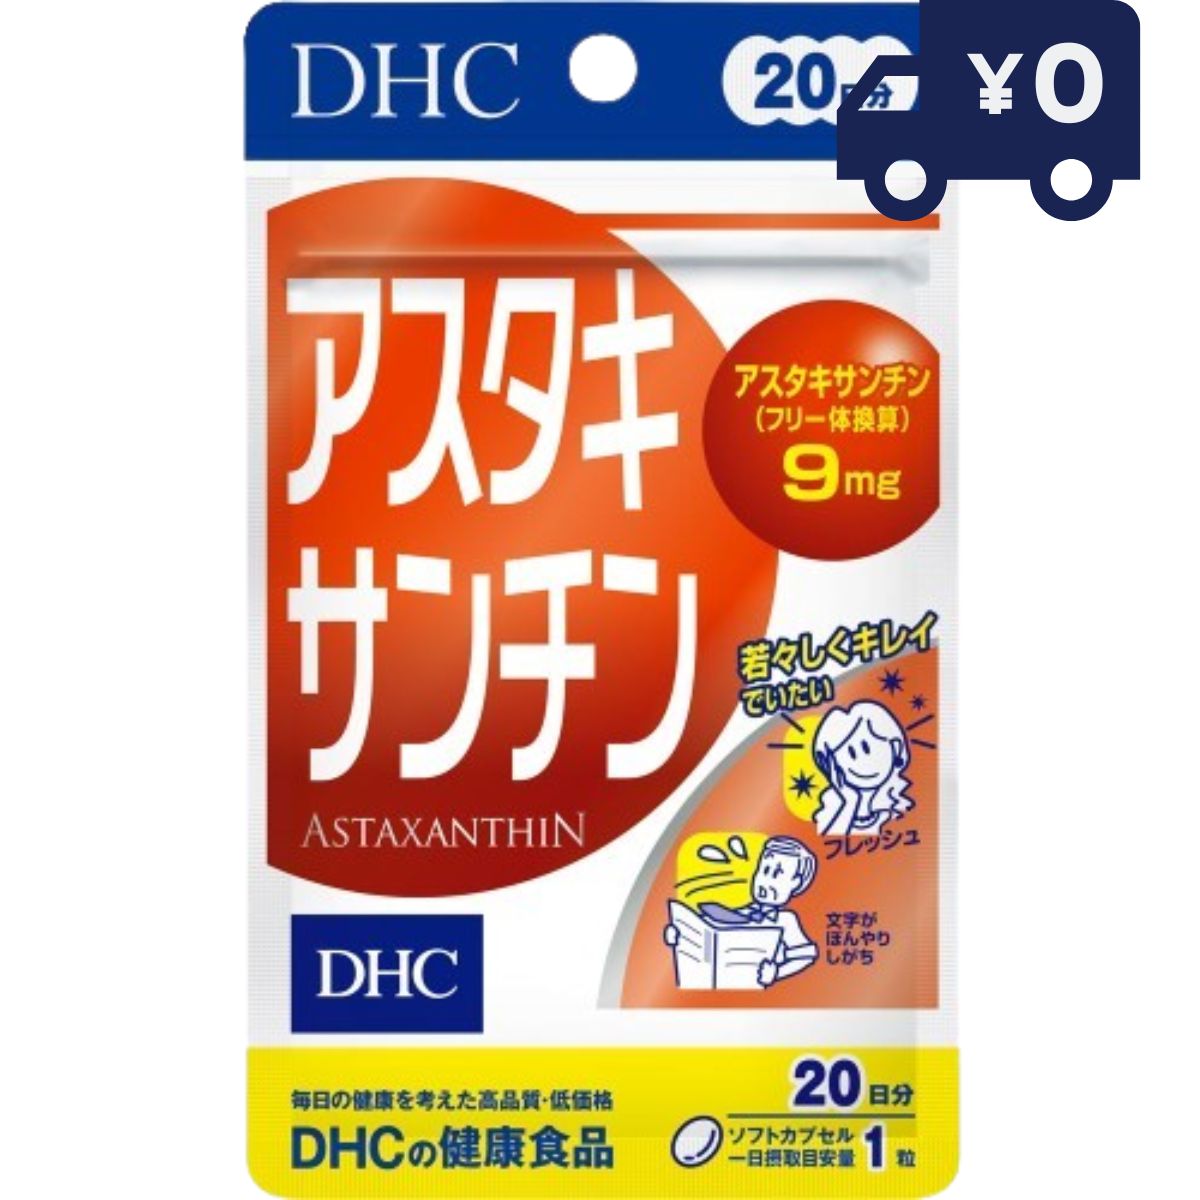 DHC アスタキサンチン【(20日分)20粒】 ディーエイチシー dhc ソフトカプセル レディース DHC ビタミン..